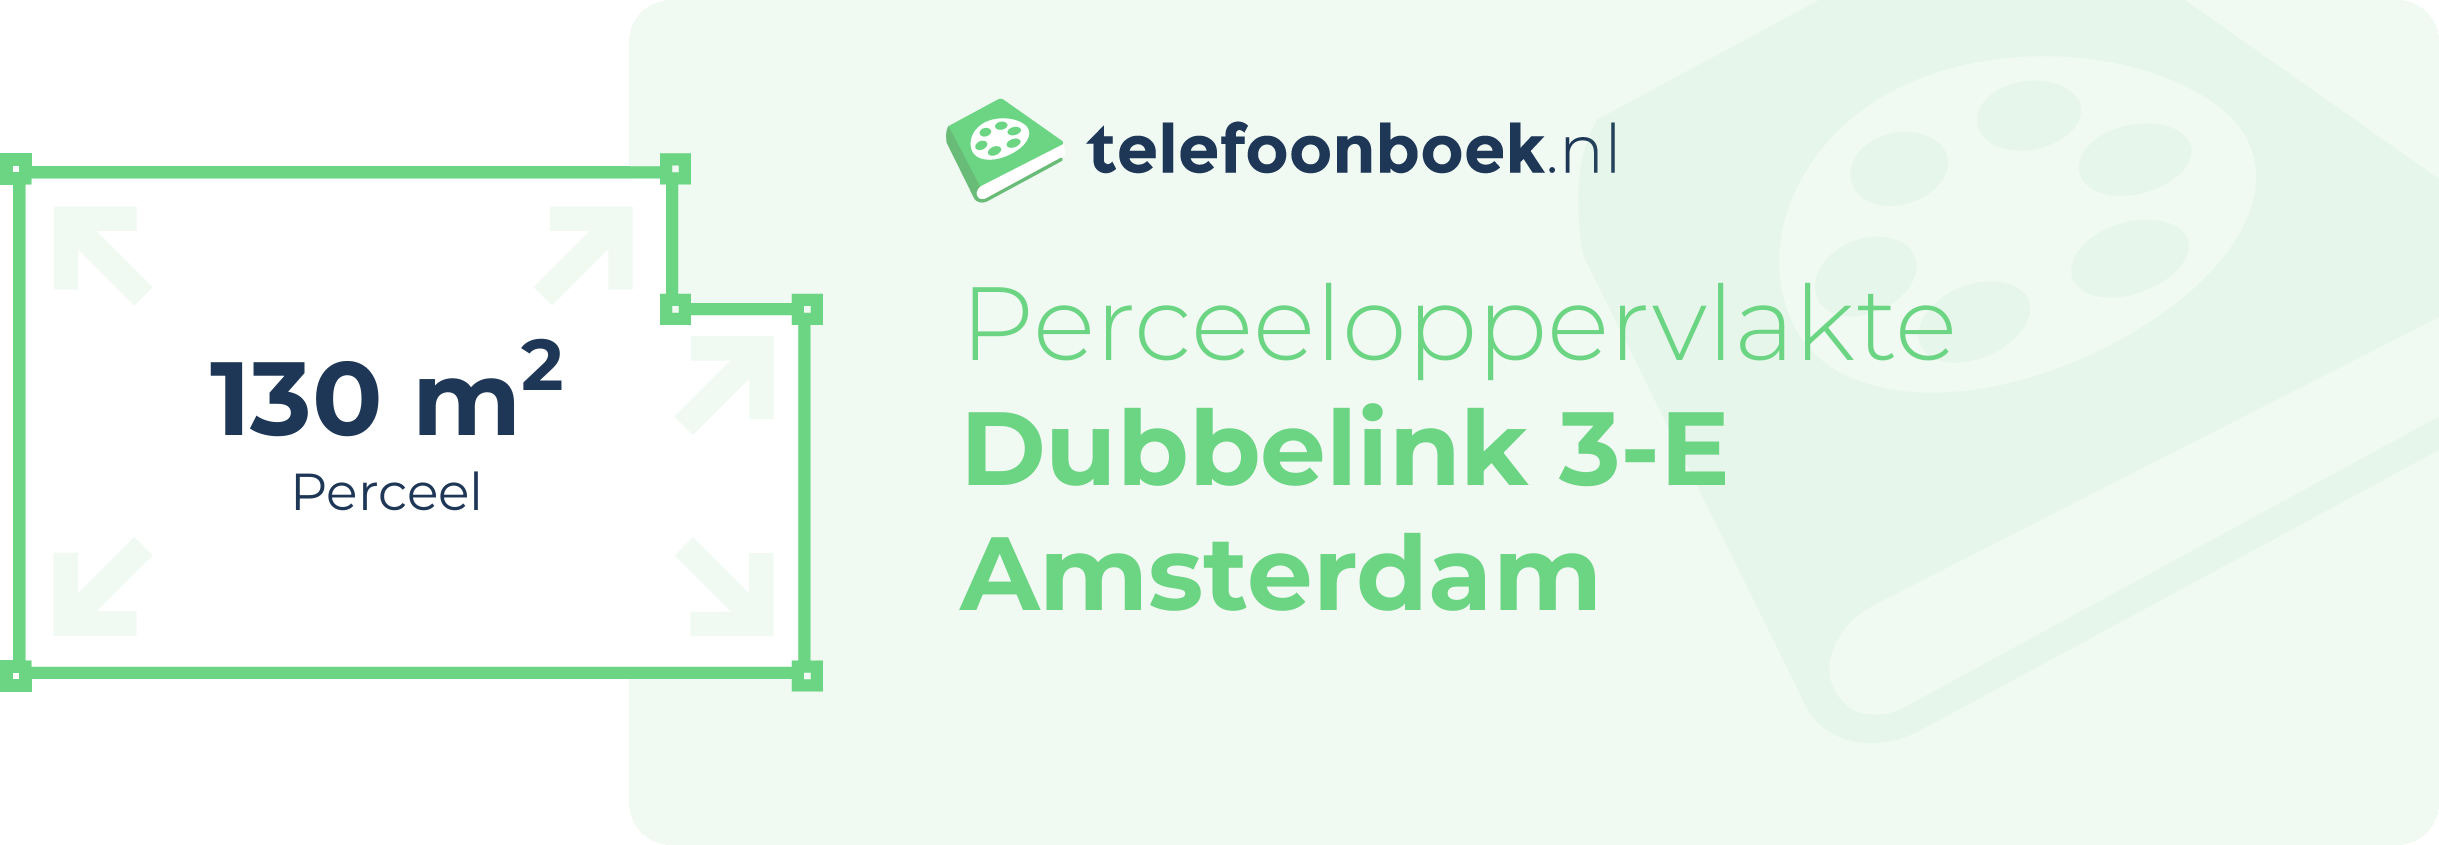 Perceeloppervlakte Dubbelink 3-E Amsterdam